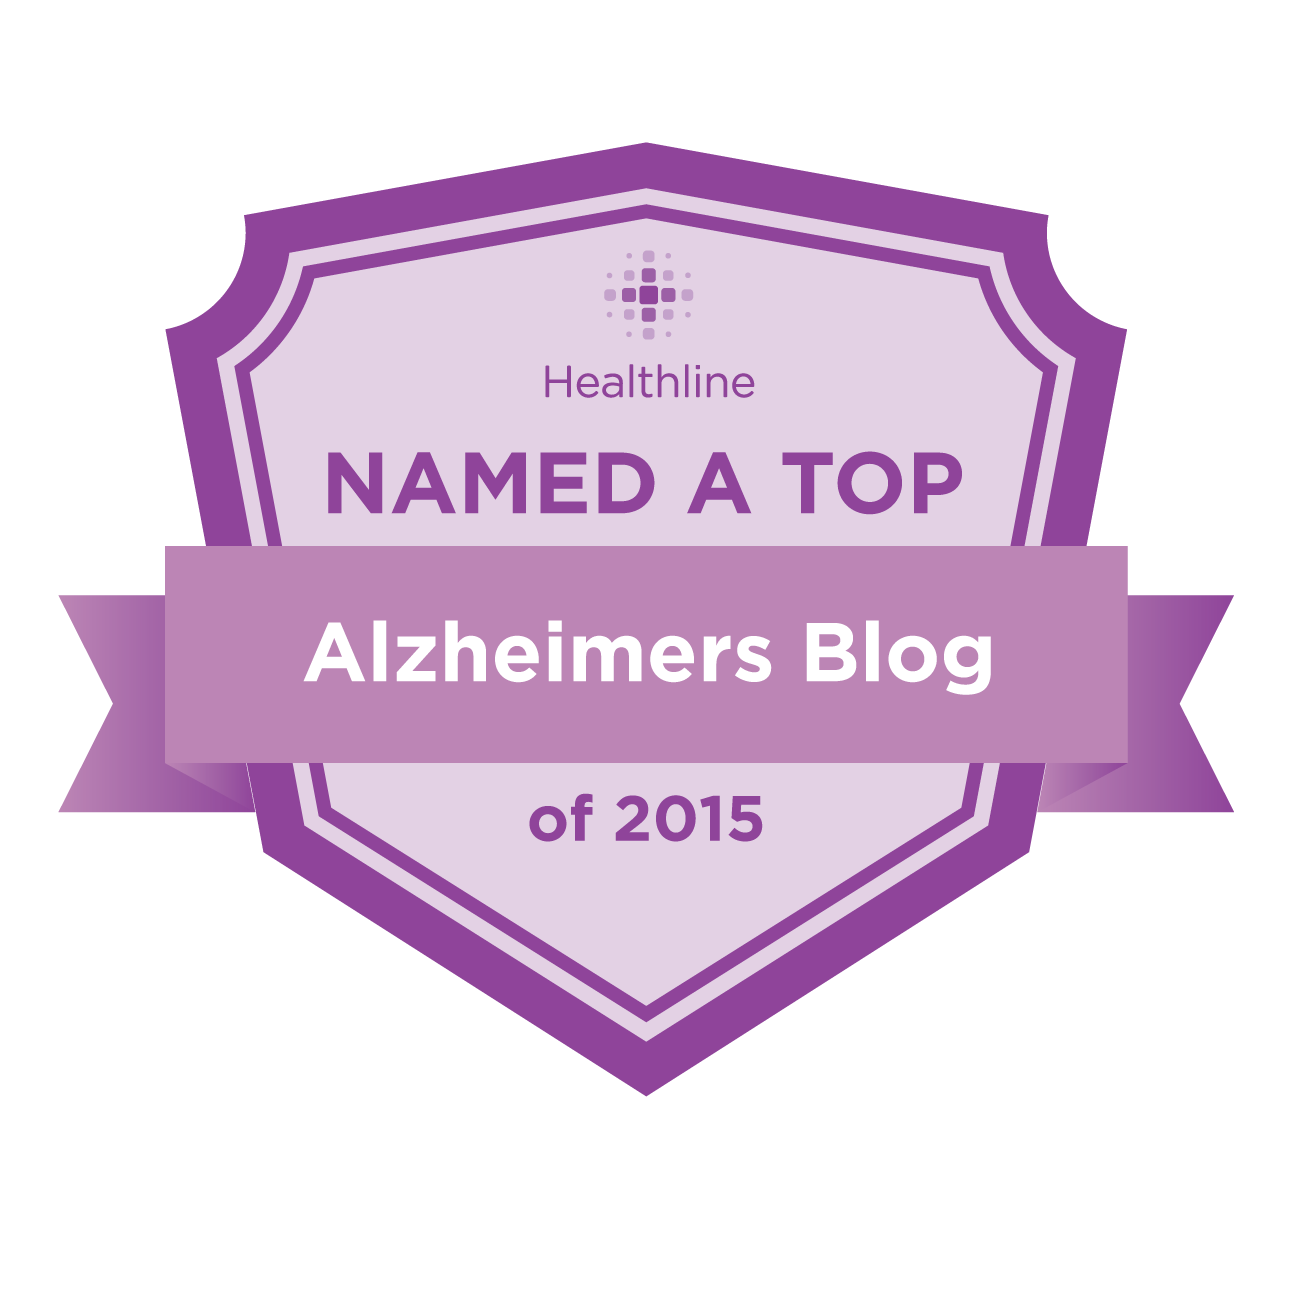 alzheimers best blogs badge